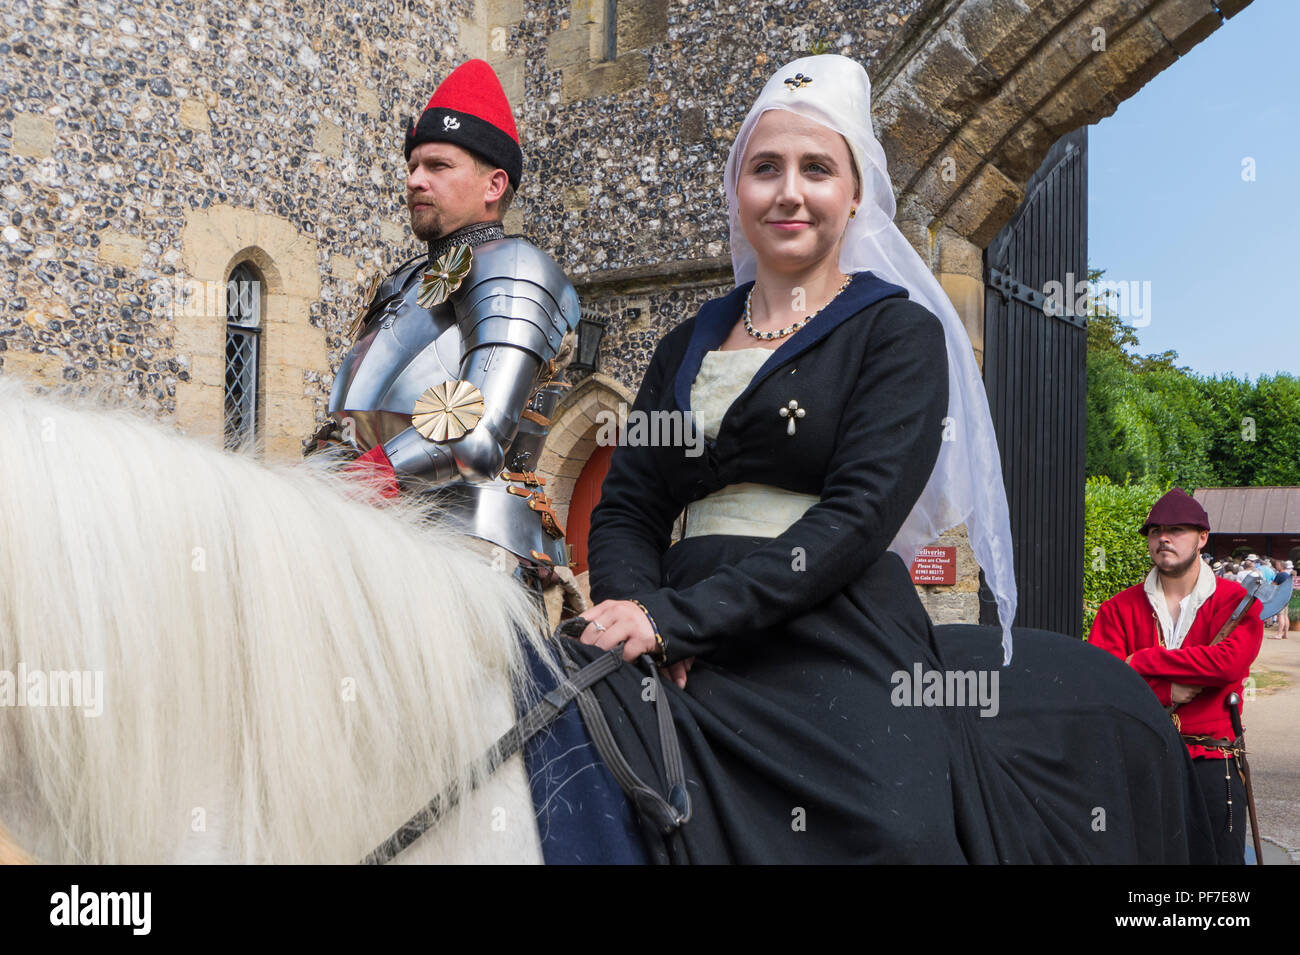 Leute auf dem Rücken der Pferde bei einem schwertkampf Ereignis in traditionelle mittelalterliche Kleidung in Arundel, West Sussex, England, UK gekleidet. Mittelalter Kostüme. Stockfoto